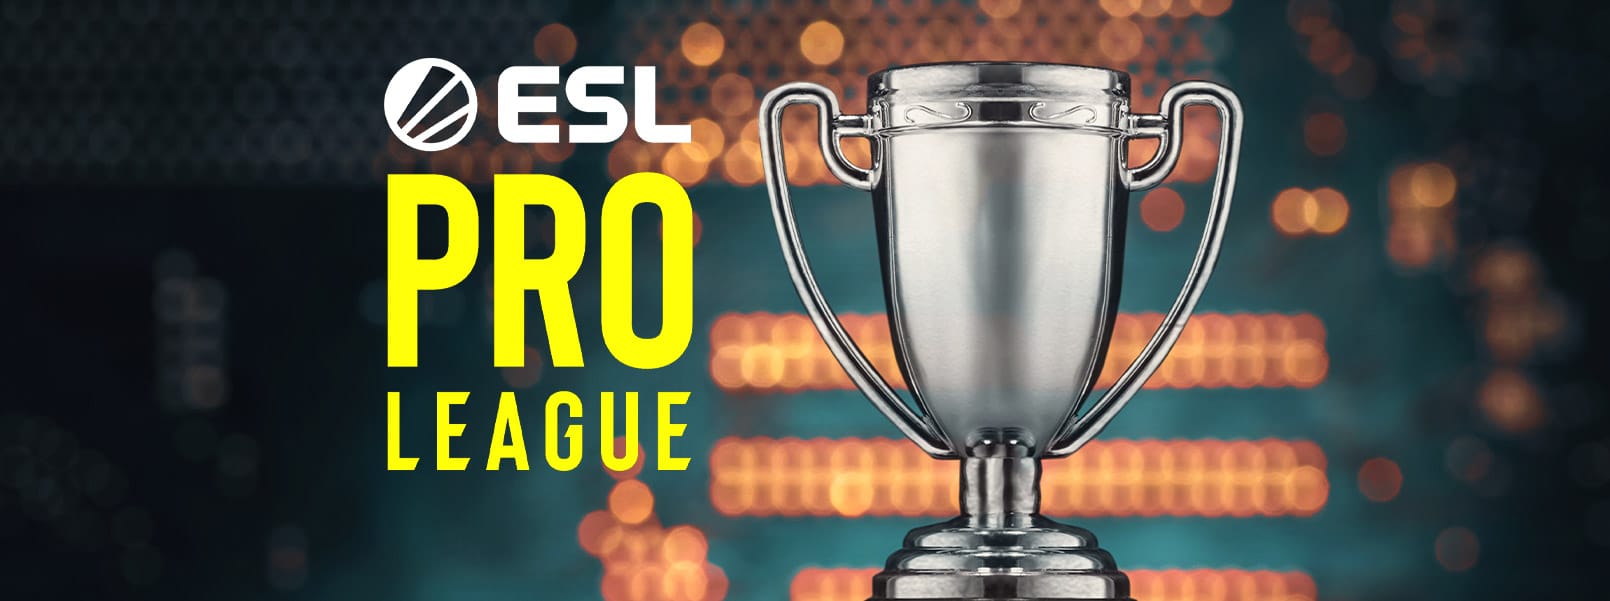 ESL Pro League Ediția 13